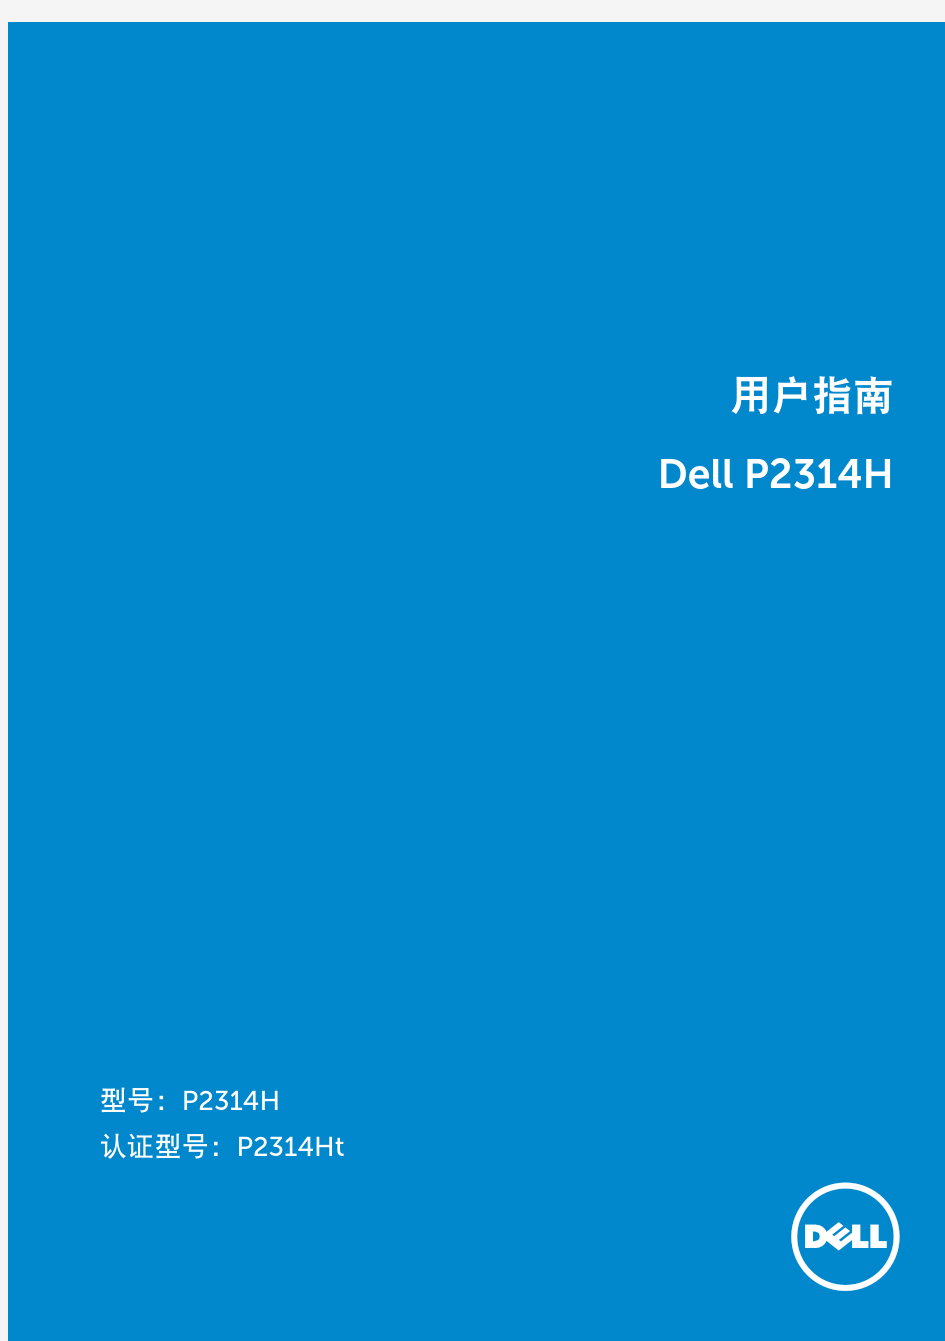 DELL P2314H 用户手册 用户指南 user‘s guide